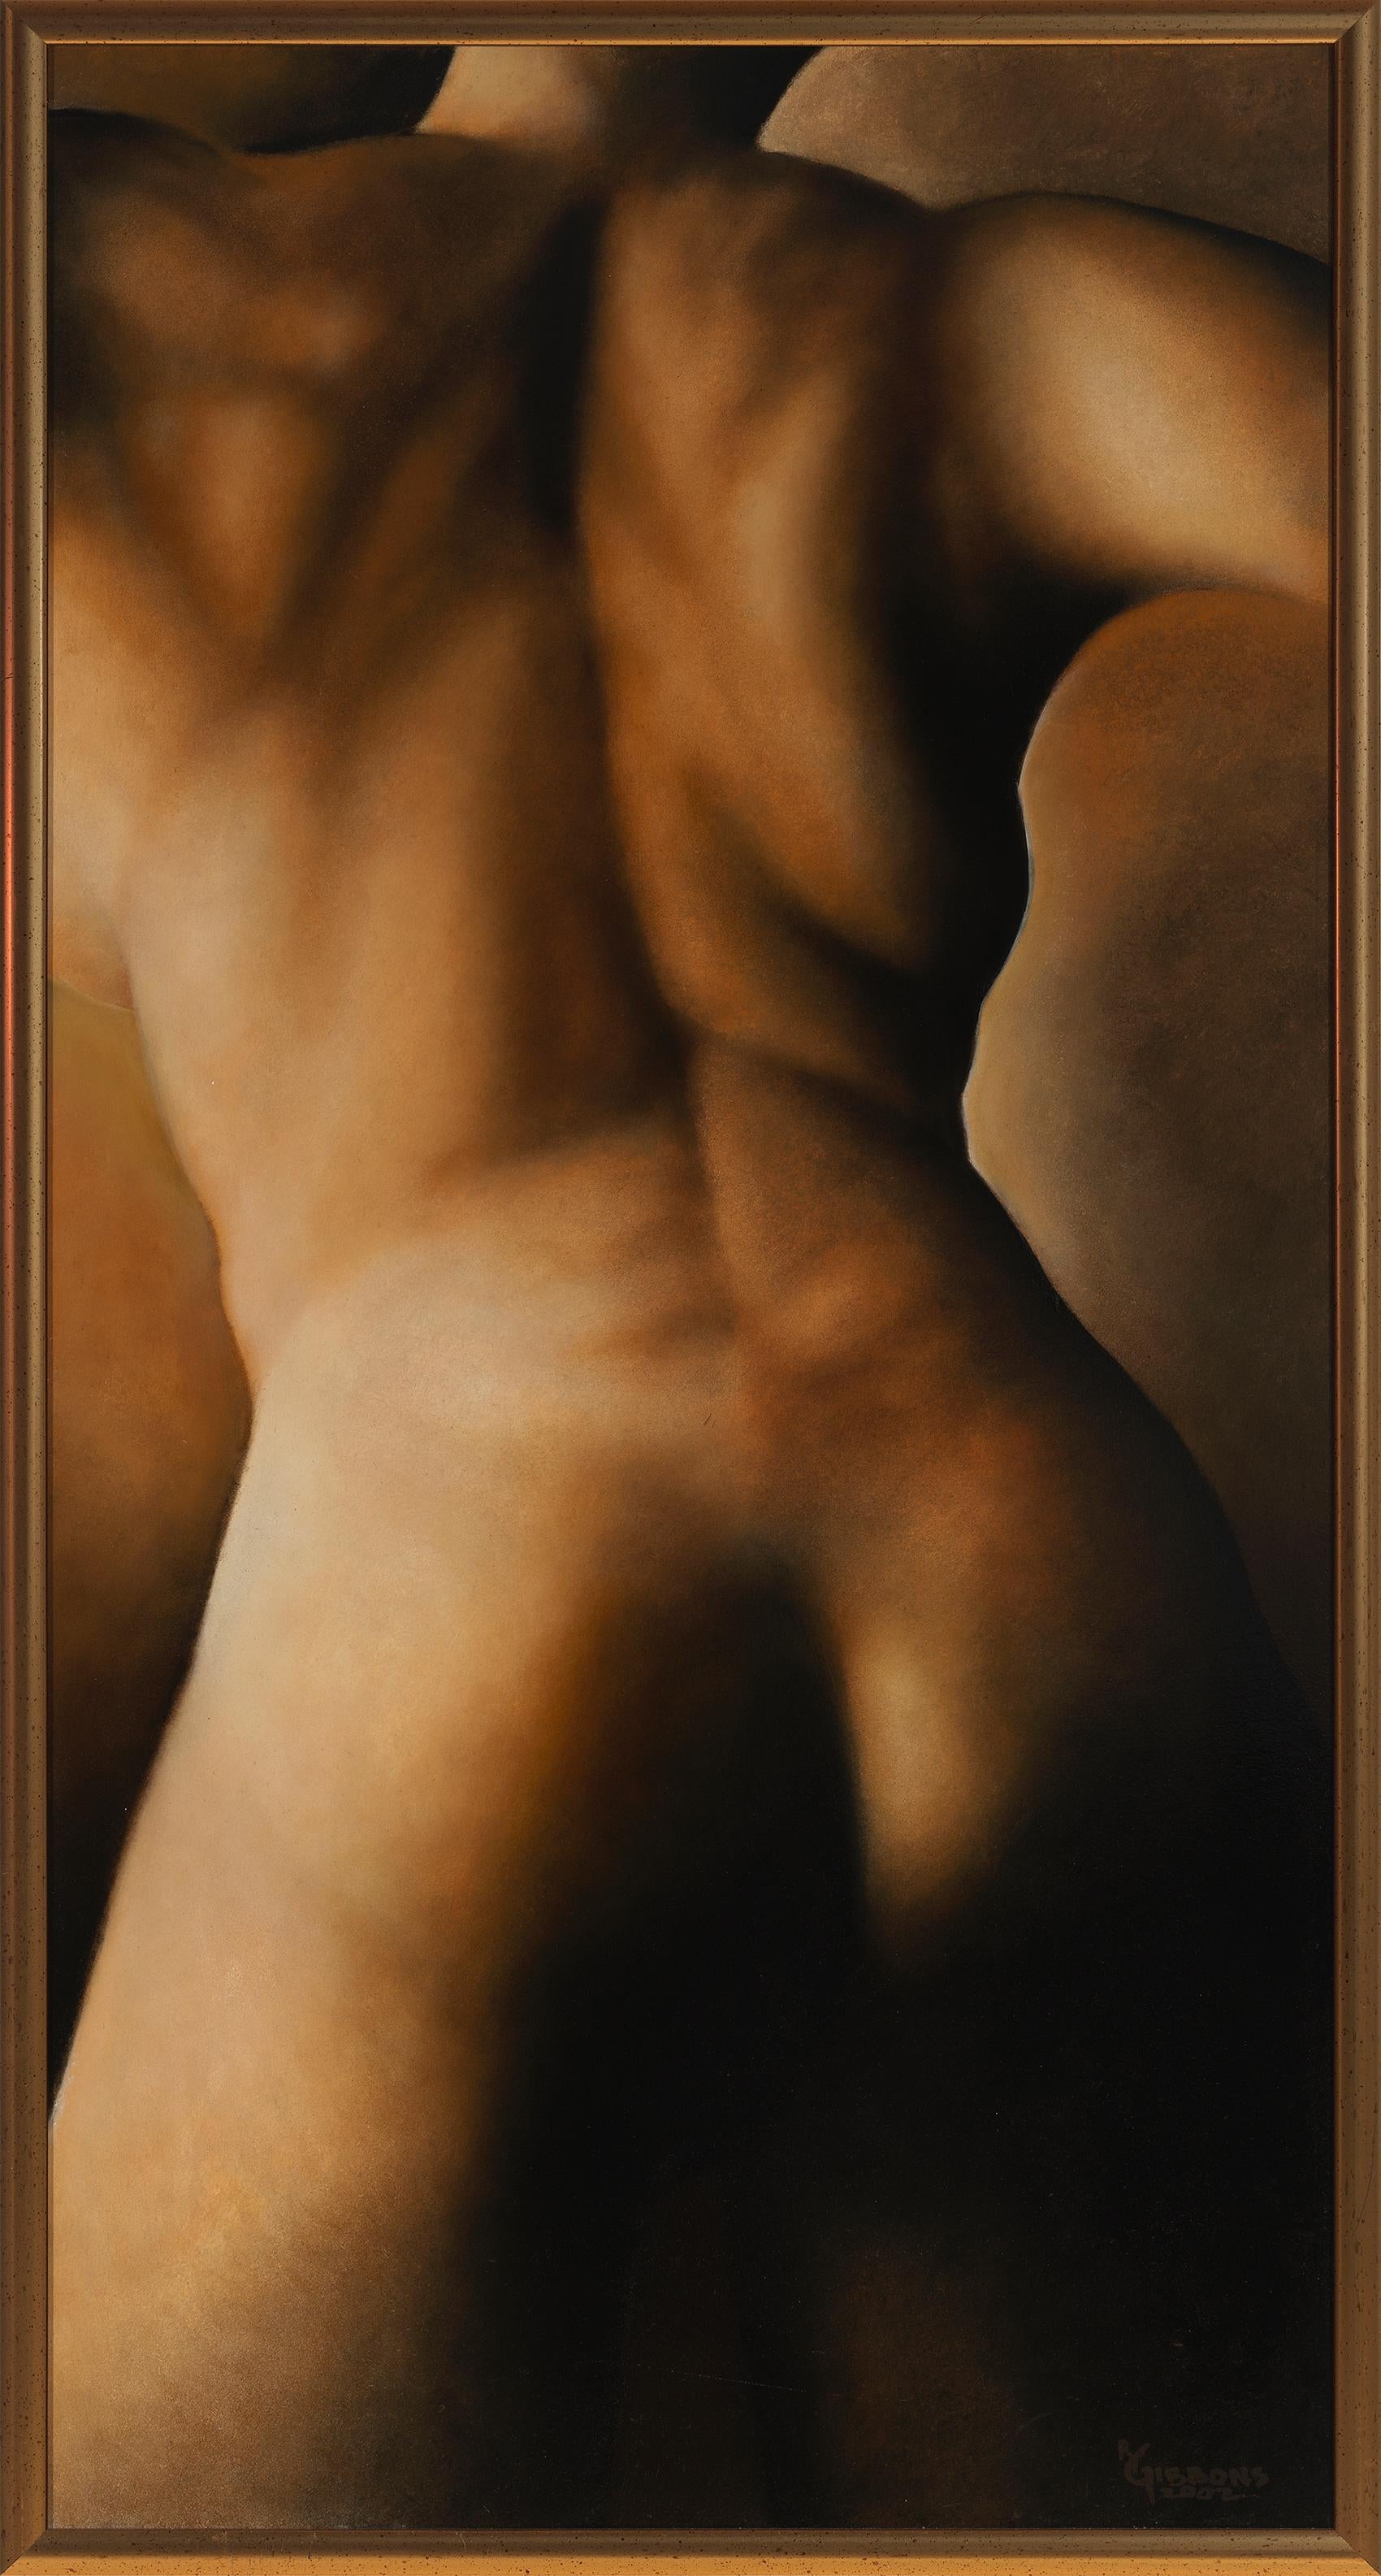 Richard Gibbons Figurative Painting – Movement (#172) - Original Ölgemälde eines nackten weiblichen Rückens in warmen Hauttönen